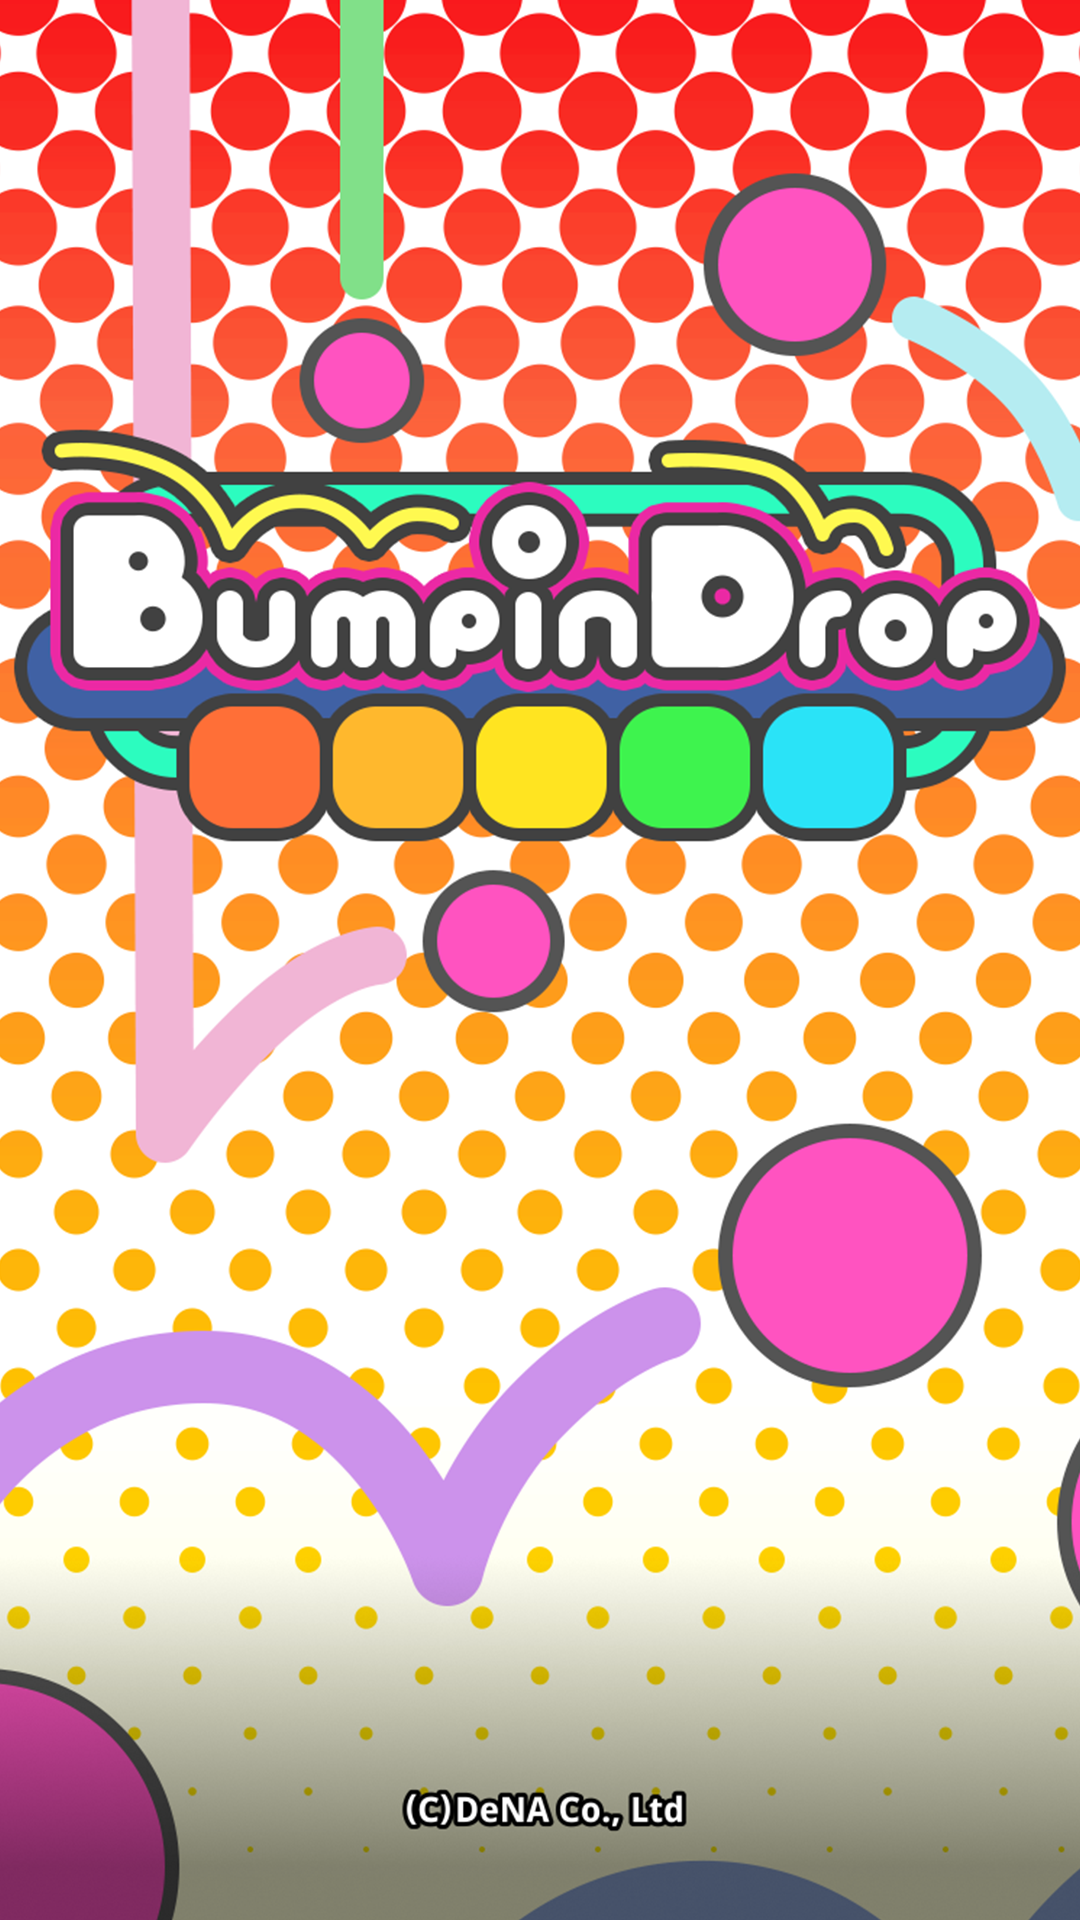 Bumpin Drop遊戲截圖